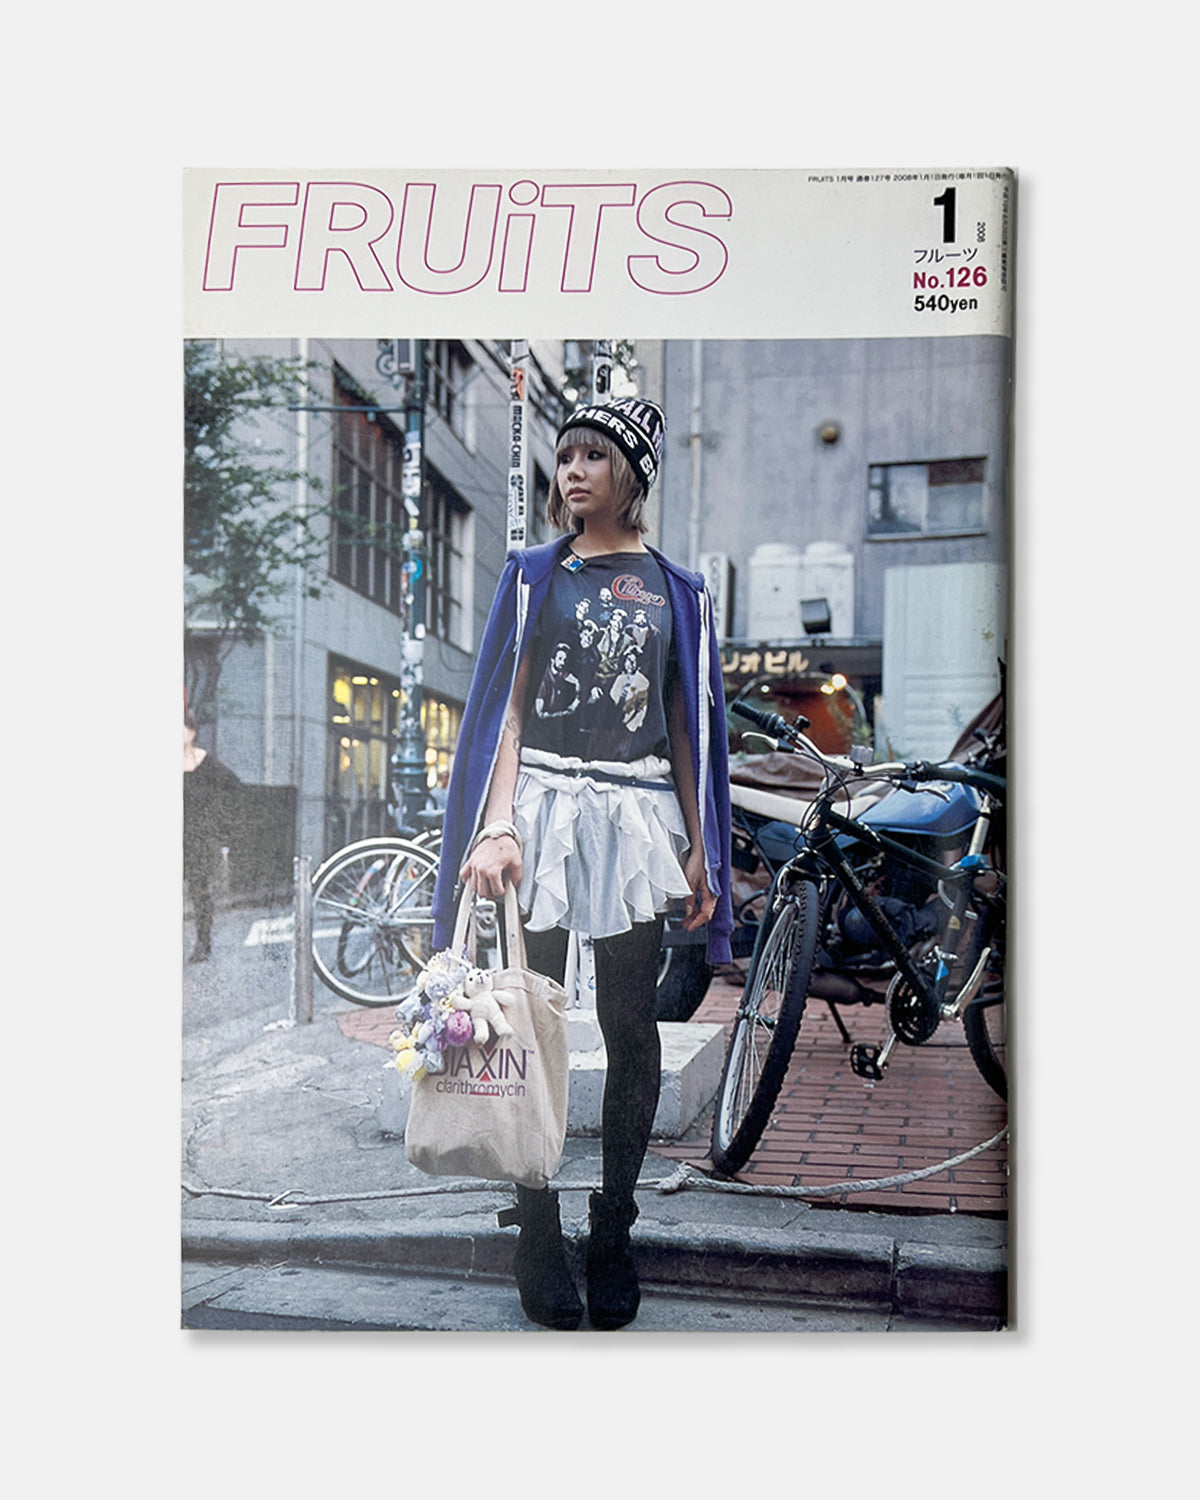 Fruits Magazine January 2008 (#126)